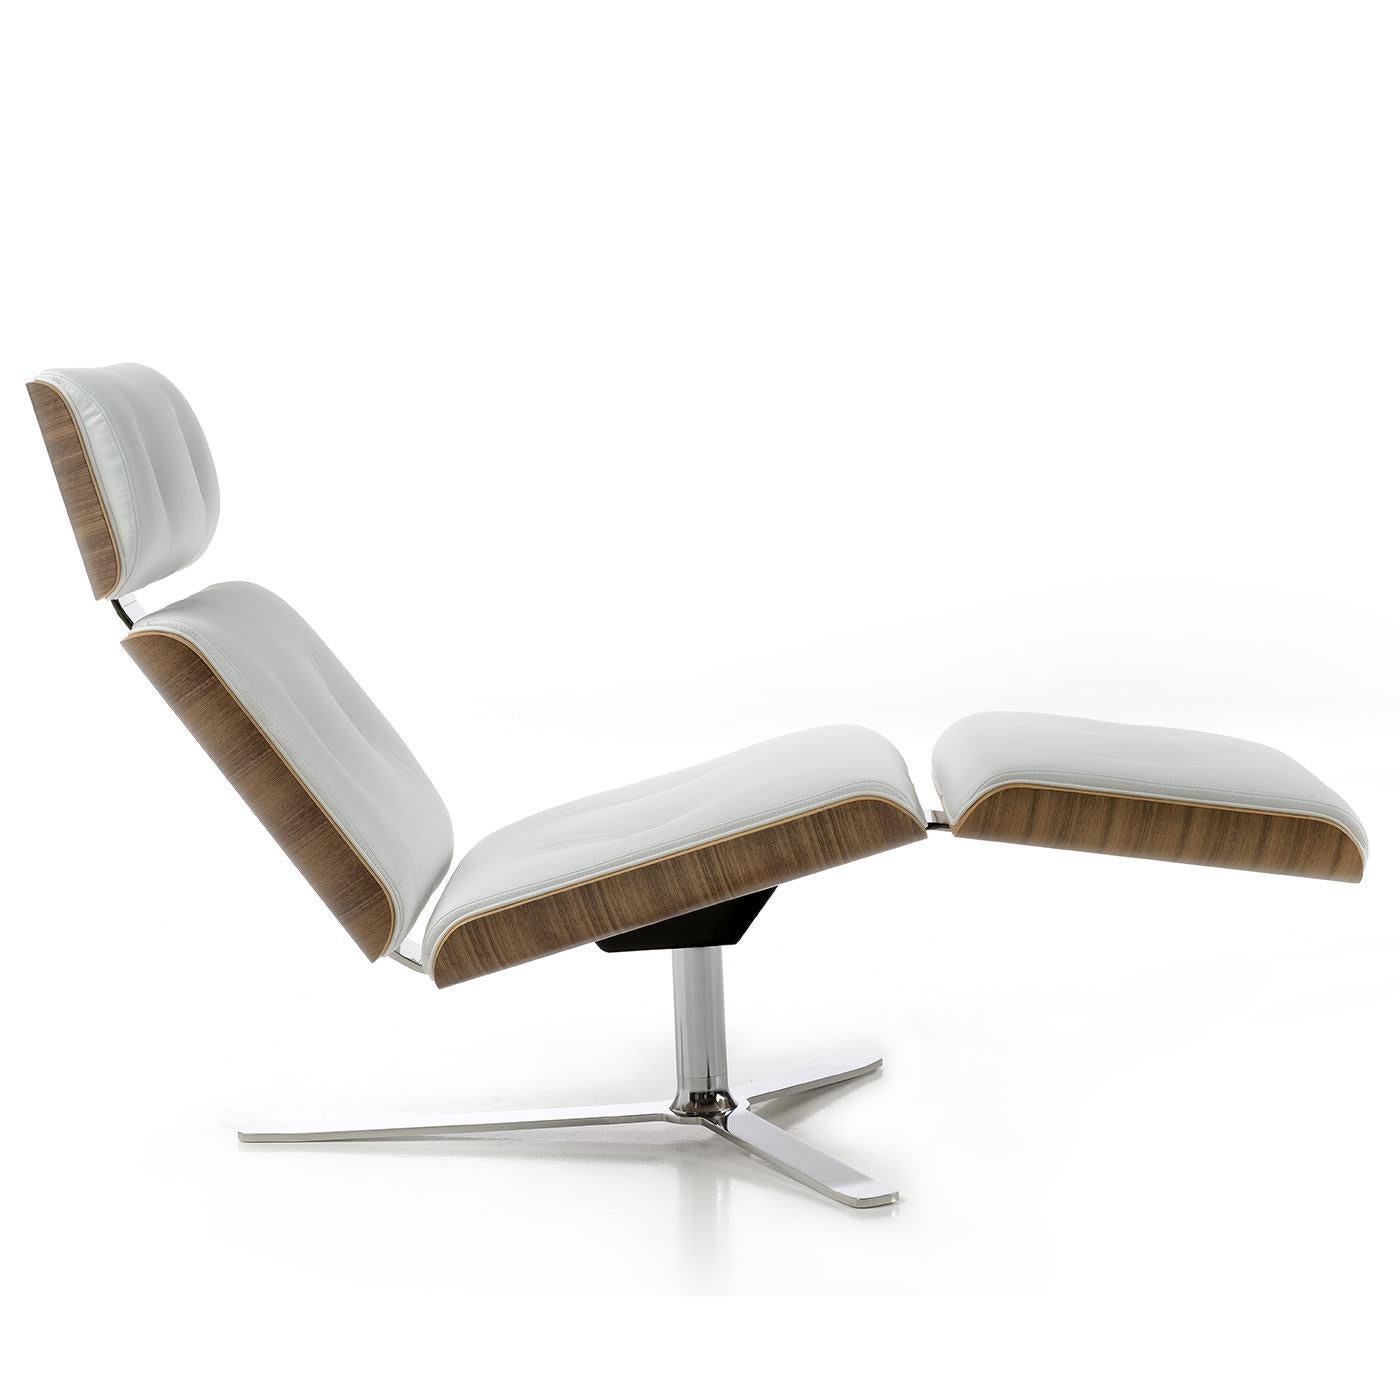 L'Armadillo/7 est une chaise longue de luxe de Rainer Bachschmid qui allie design et matériaux de haute qualité sans sacrifier le confort. Se distinguant par une position ergonomique accueillante, les coussins d'assise rembourrés sont revêtus de